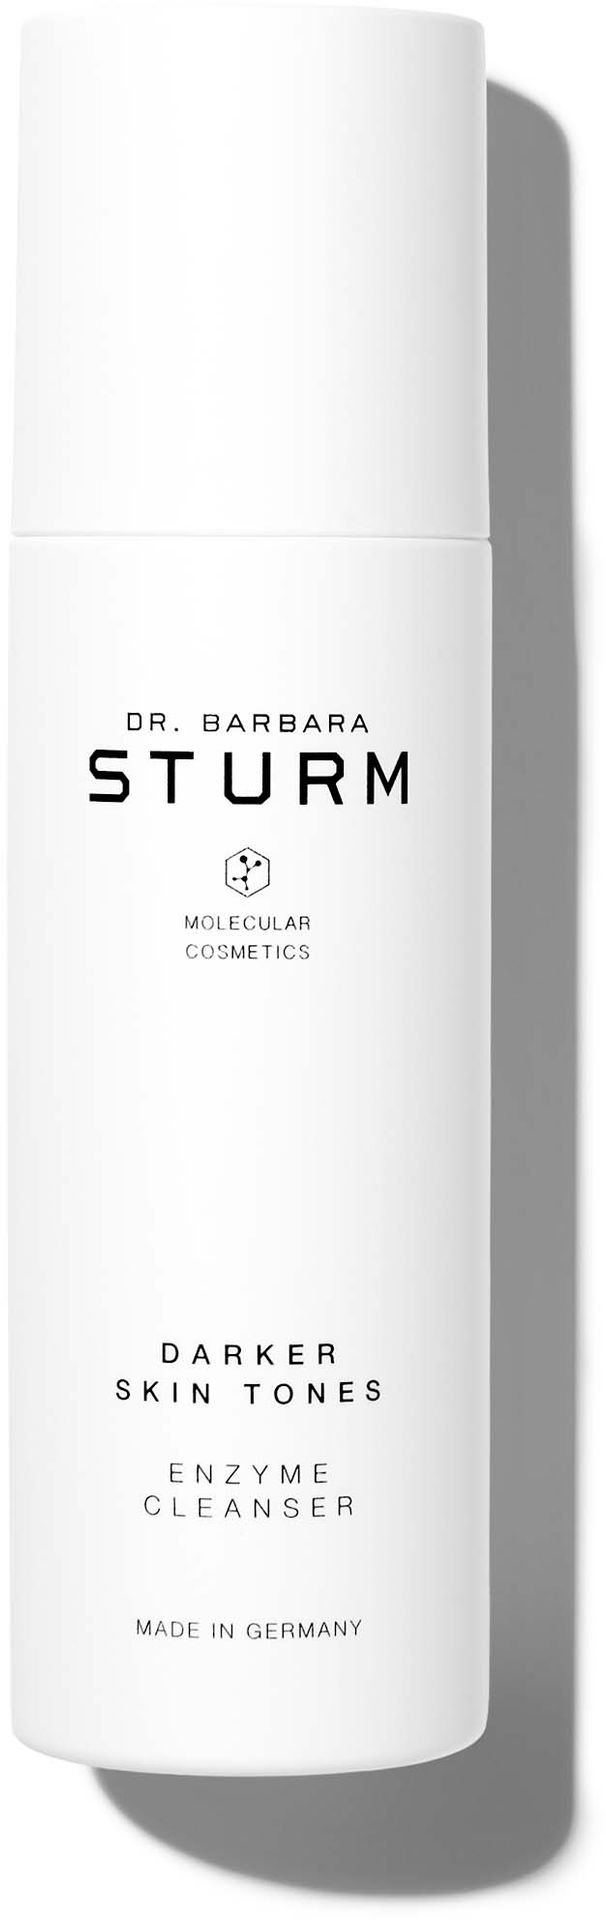 Dr. Barbara Sturm Darker Skin Tones Enzyme Cleanser 75ml - Proszek enzymatyczny do mycia twarzy